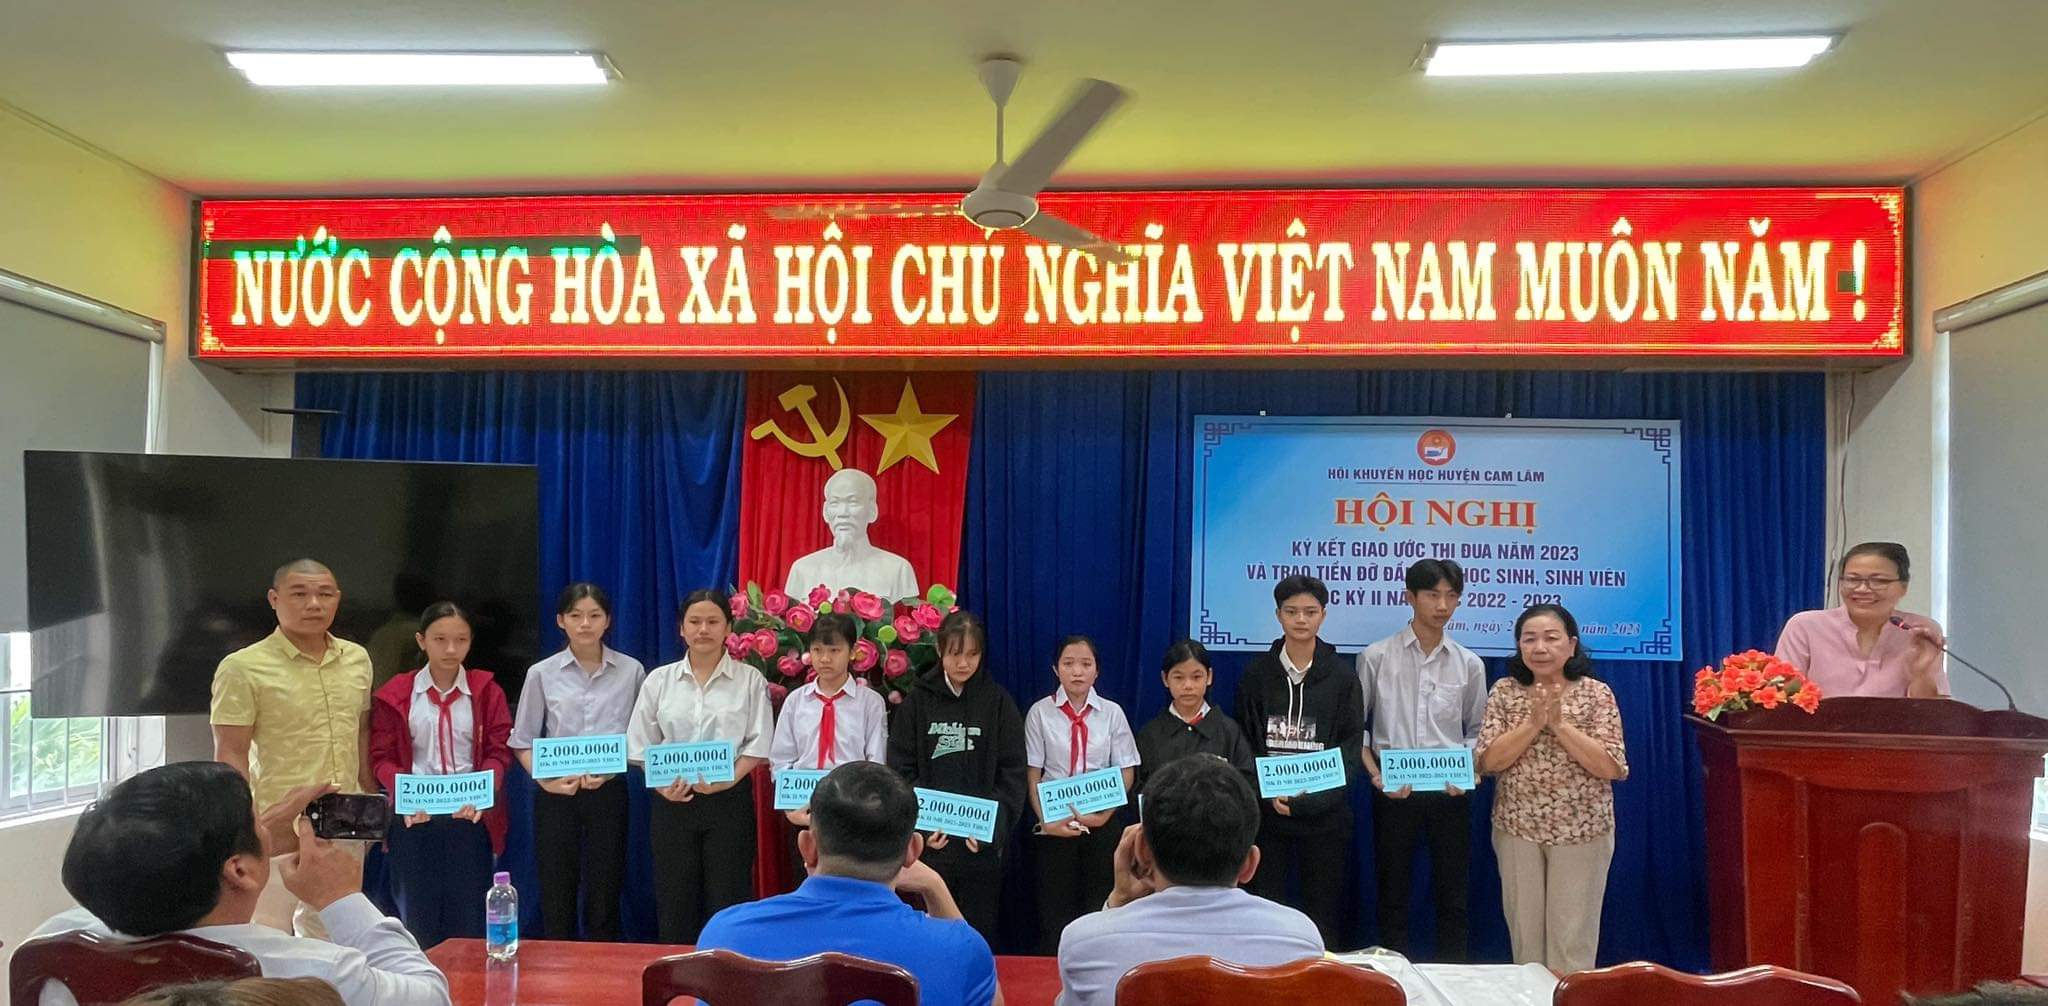 Hội Khuyến học huyện Cam Lâm tổ chức Hội nghị           Ký kết Giao ước thi đua năm 2023 và trao tiền đỡ đầu học kỳ II         năm học 2022 – 2023 cho học sinh, sinh viên có hoàn cảnh khó khăn